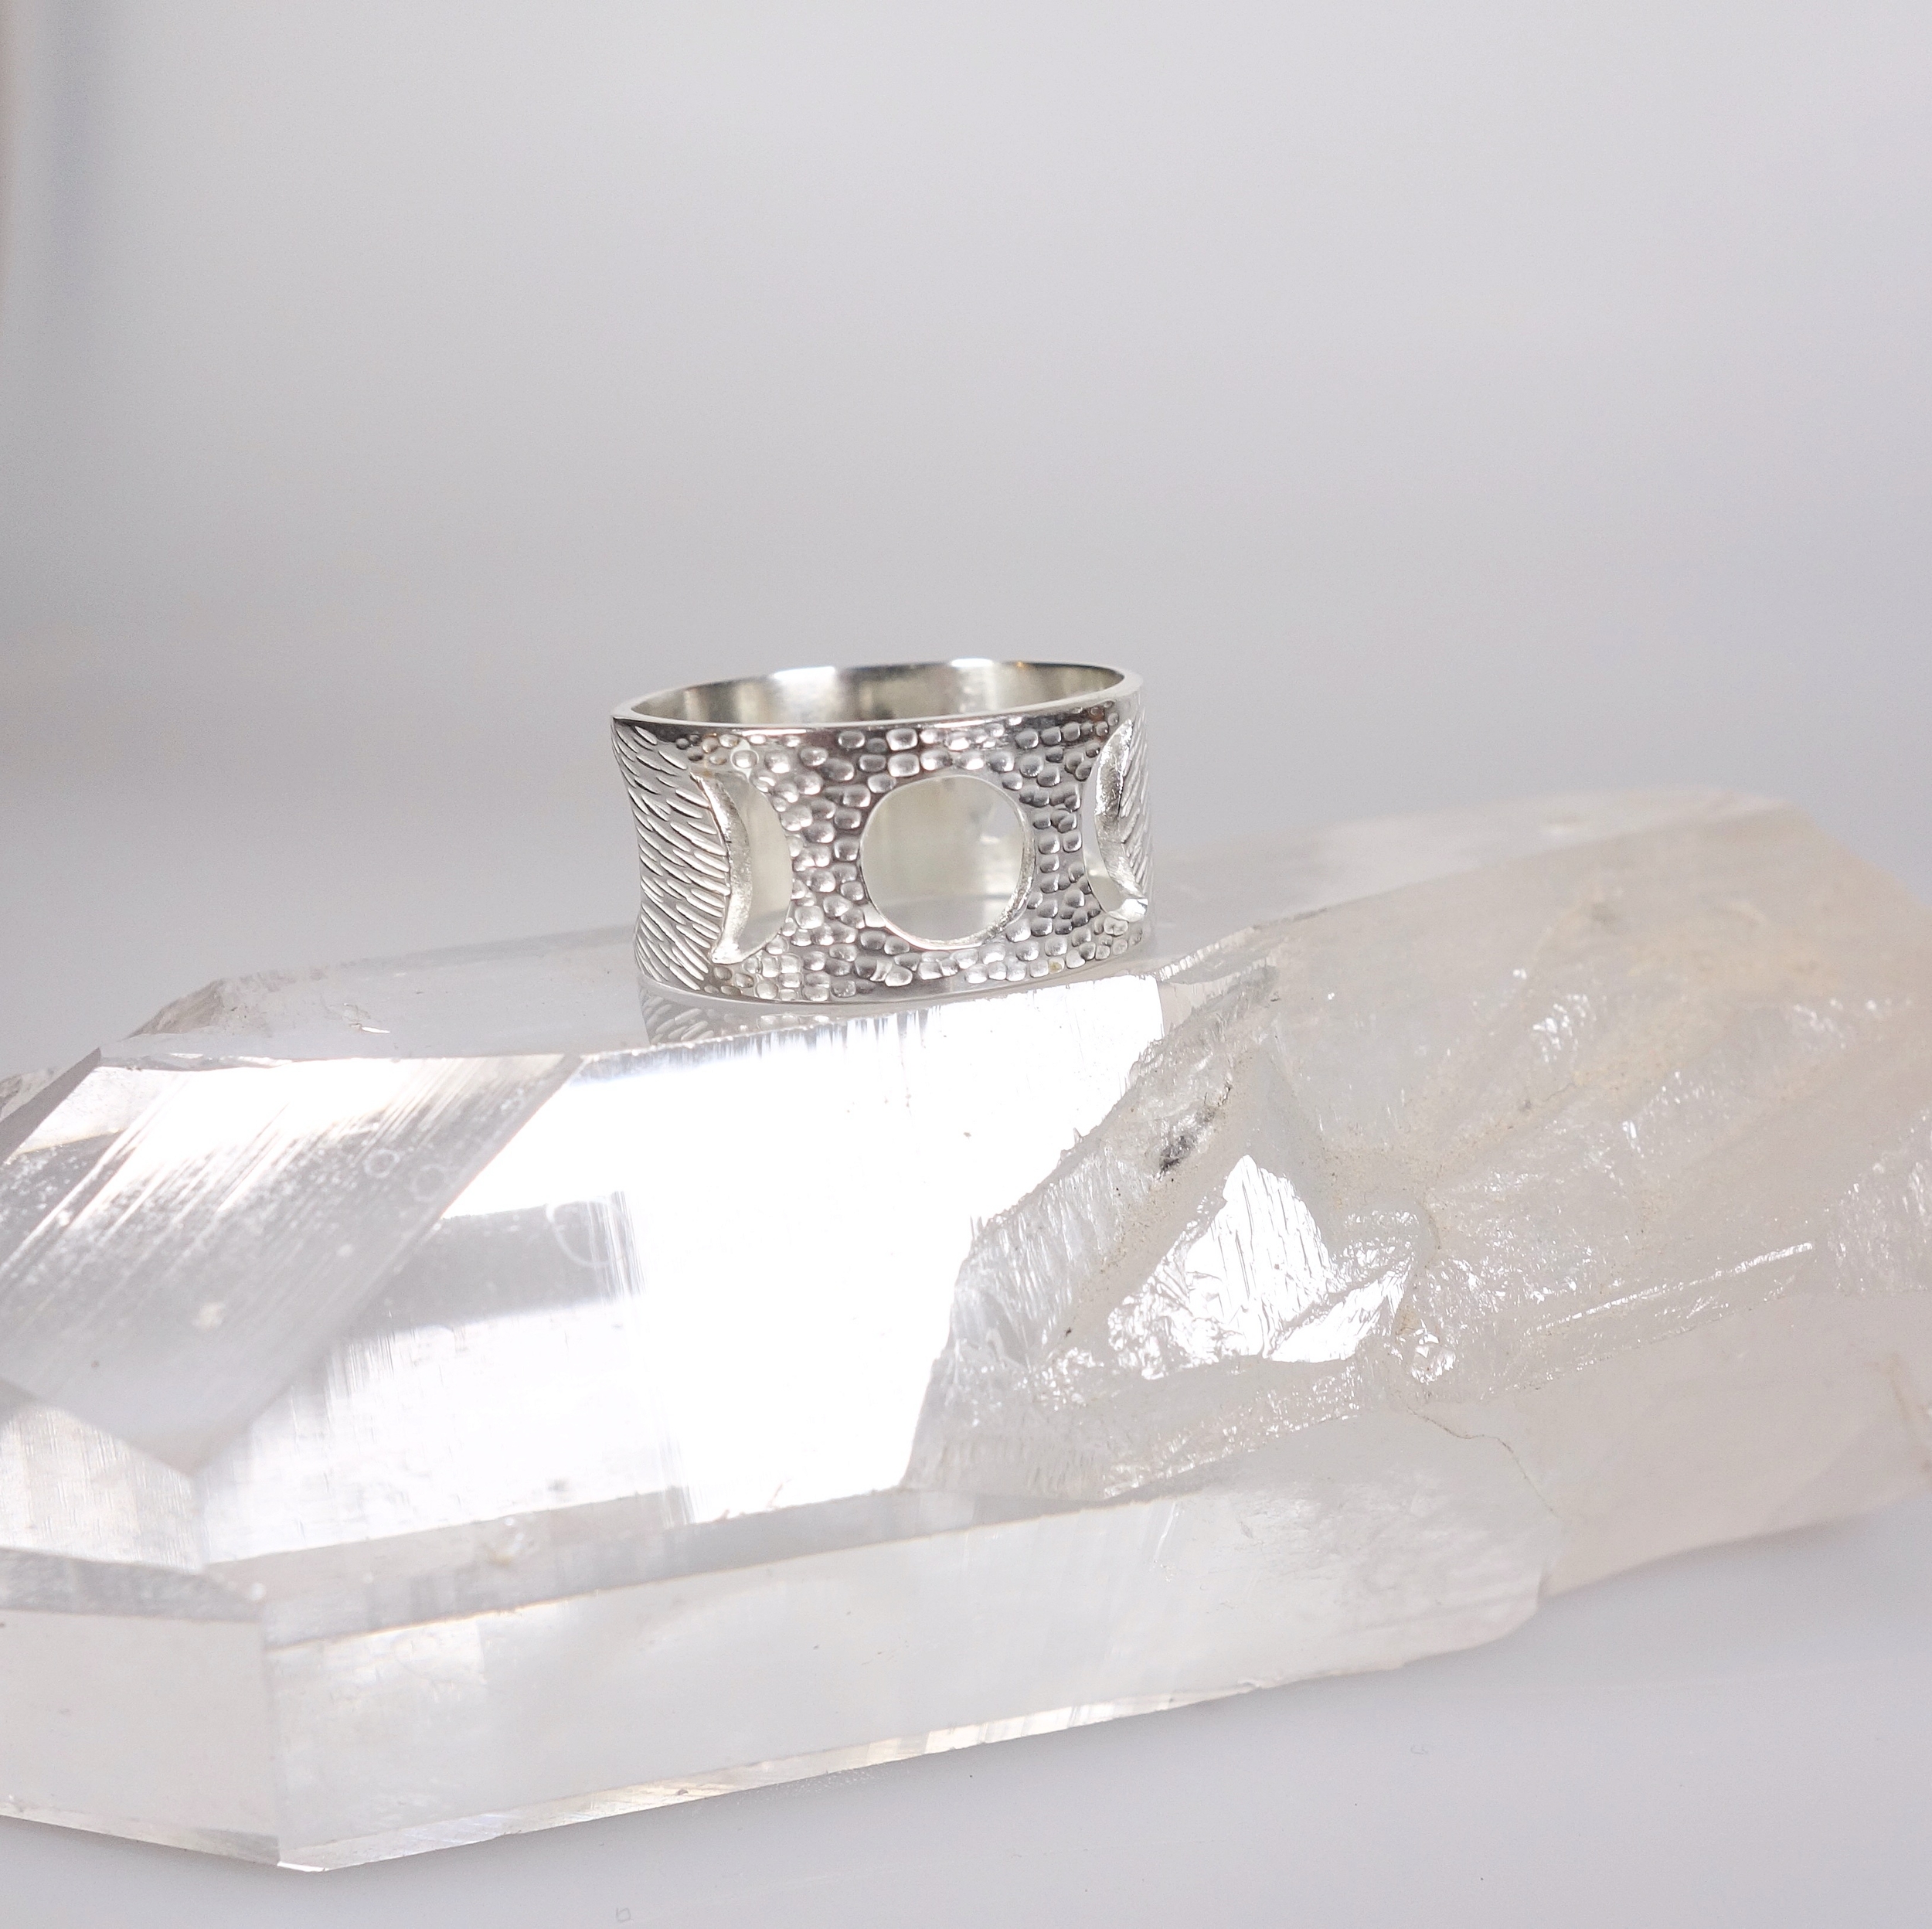 Bague féminin sacré (cycle lunaire) en argent massif ciselé, vue de profil sur un cristal de roche et un fond blanc à la lumière électrique